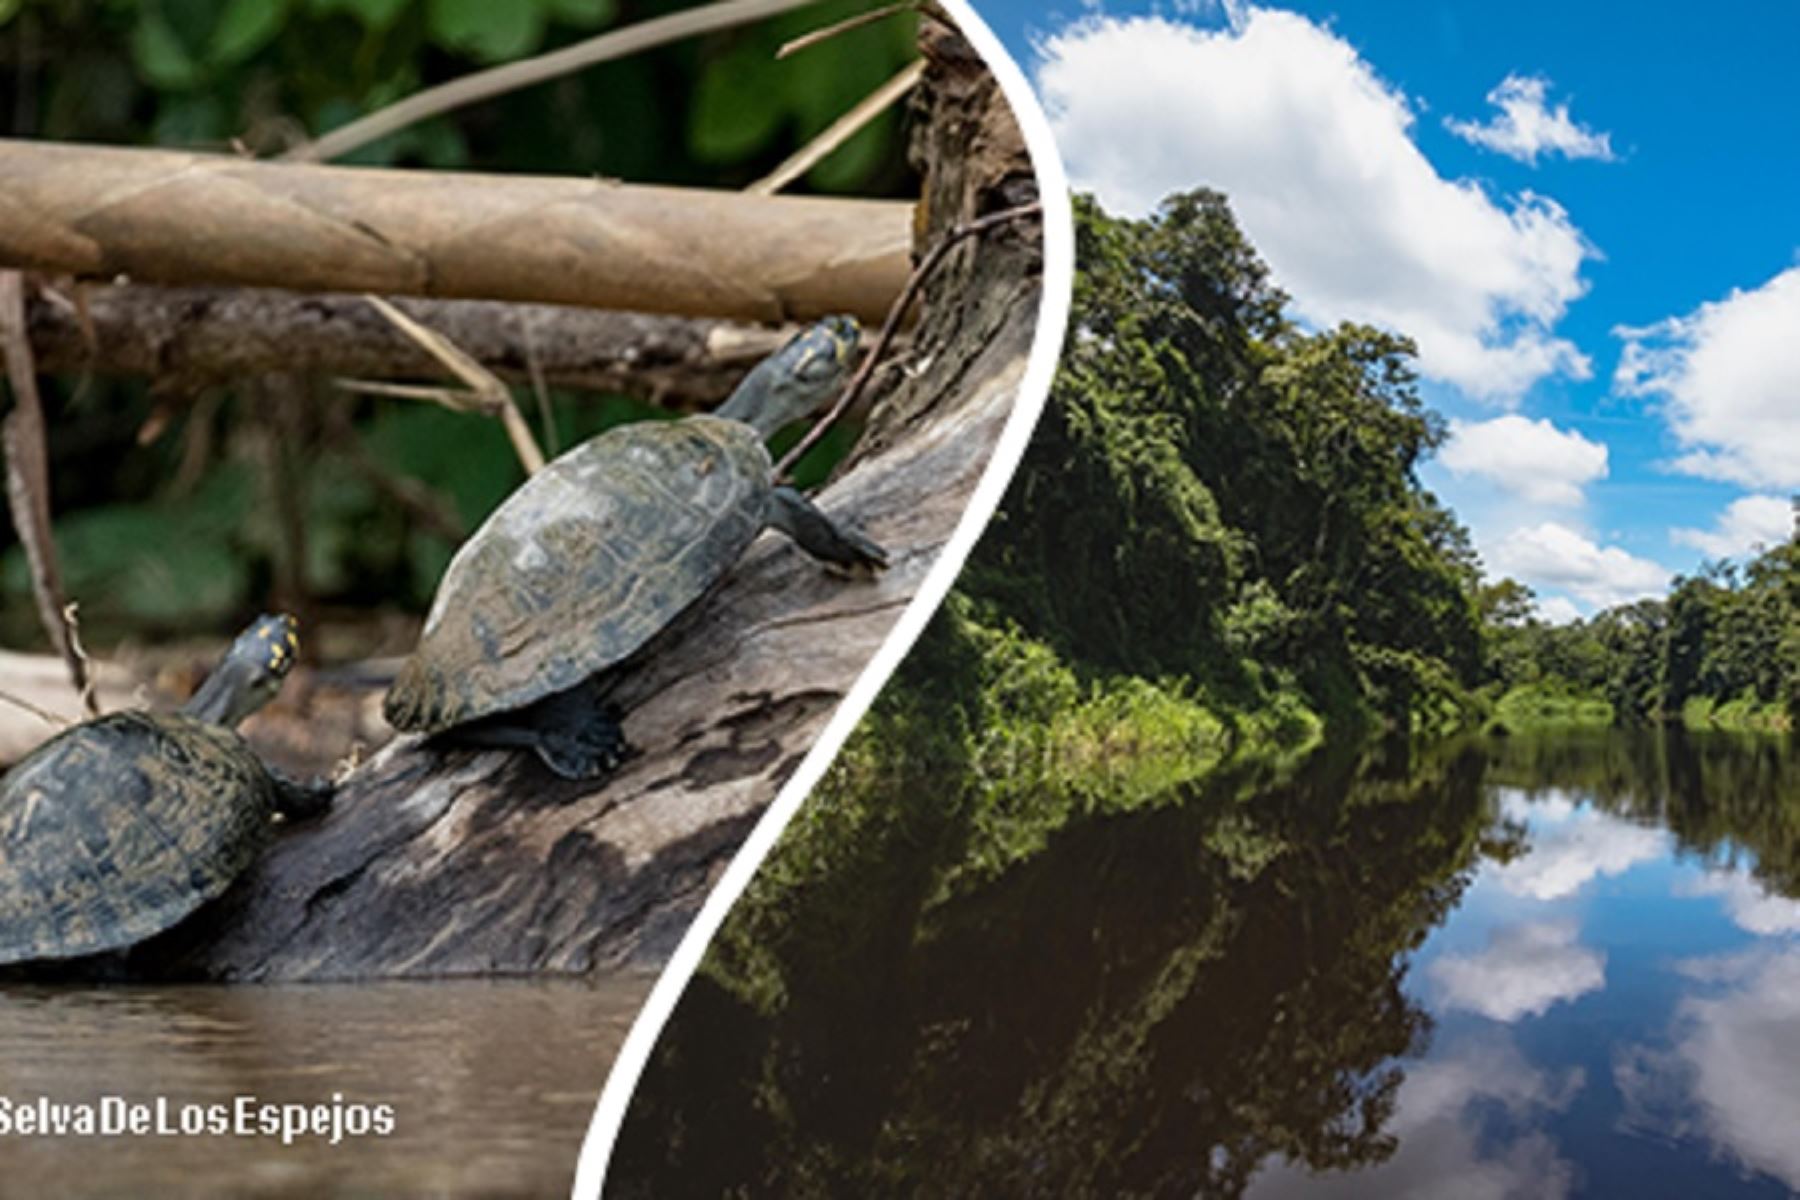 Ubicada en la región Loreto y con una extensión de 2 millones 80,000 hectáreas, la Reserva Nacional Pacaya Samiria es uno de los destinos turísticos amazónicos más notables del Perú gracias a su deslumbrante belleza paisajística y porque conserva una vasta biodiversidad sin parangón en el planeta.